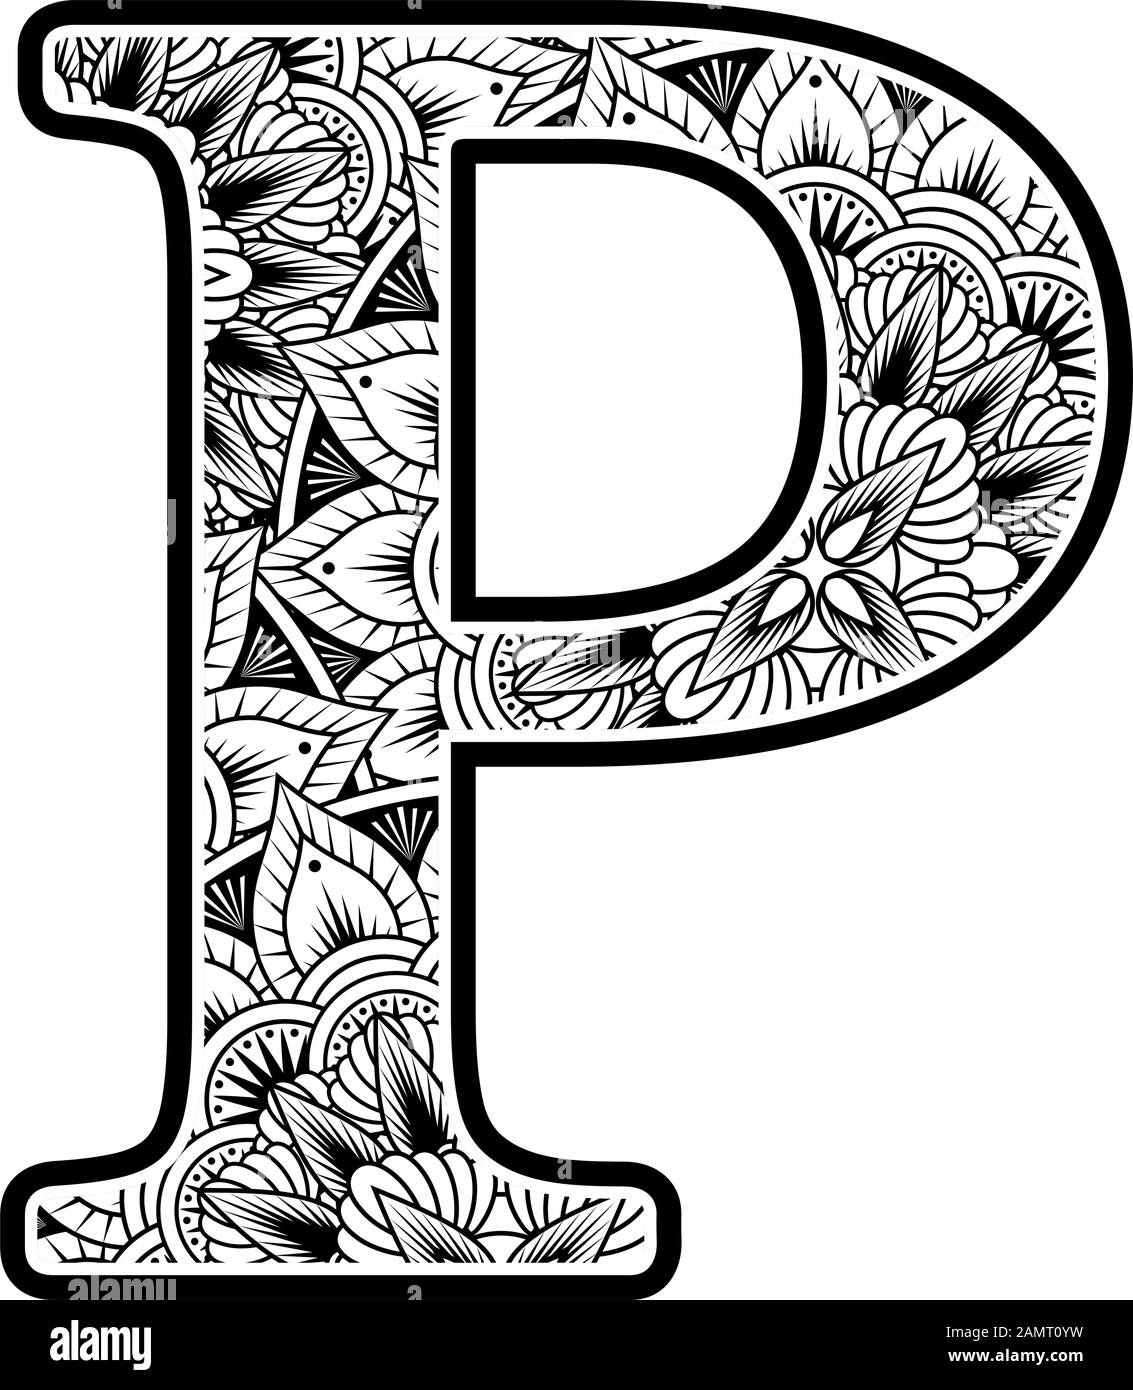 lettre p majuscule avec ornements abstraits de fleurs en noir et blanc. design inspiré du style d'art mandala pour colorier. Isolé sur fond blanc Illustration de Vecteur